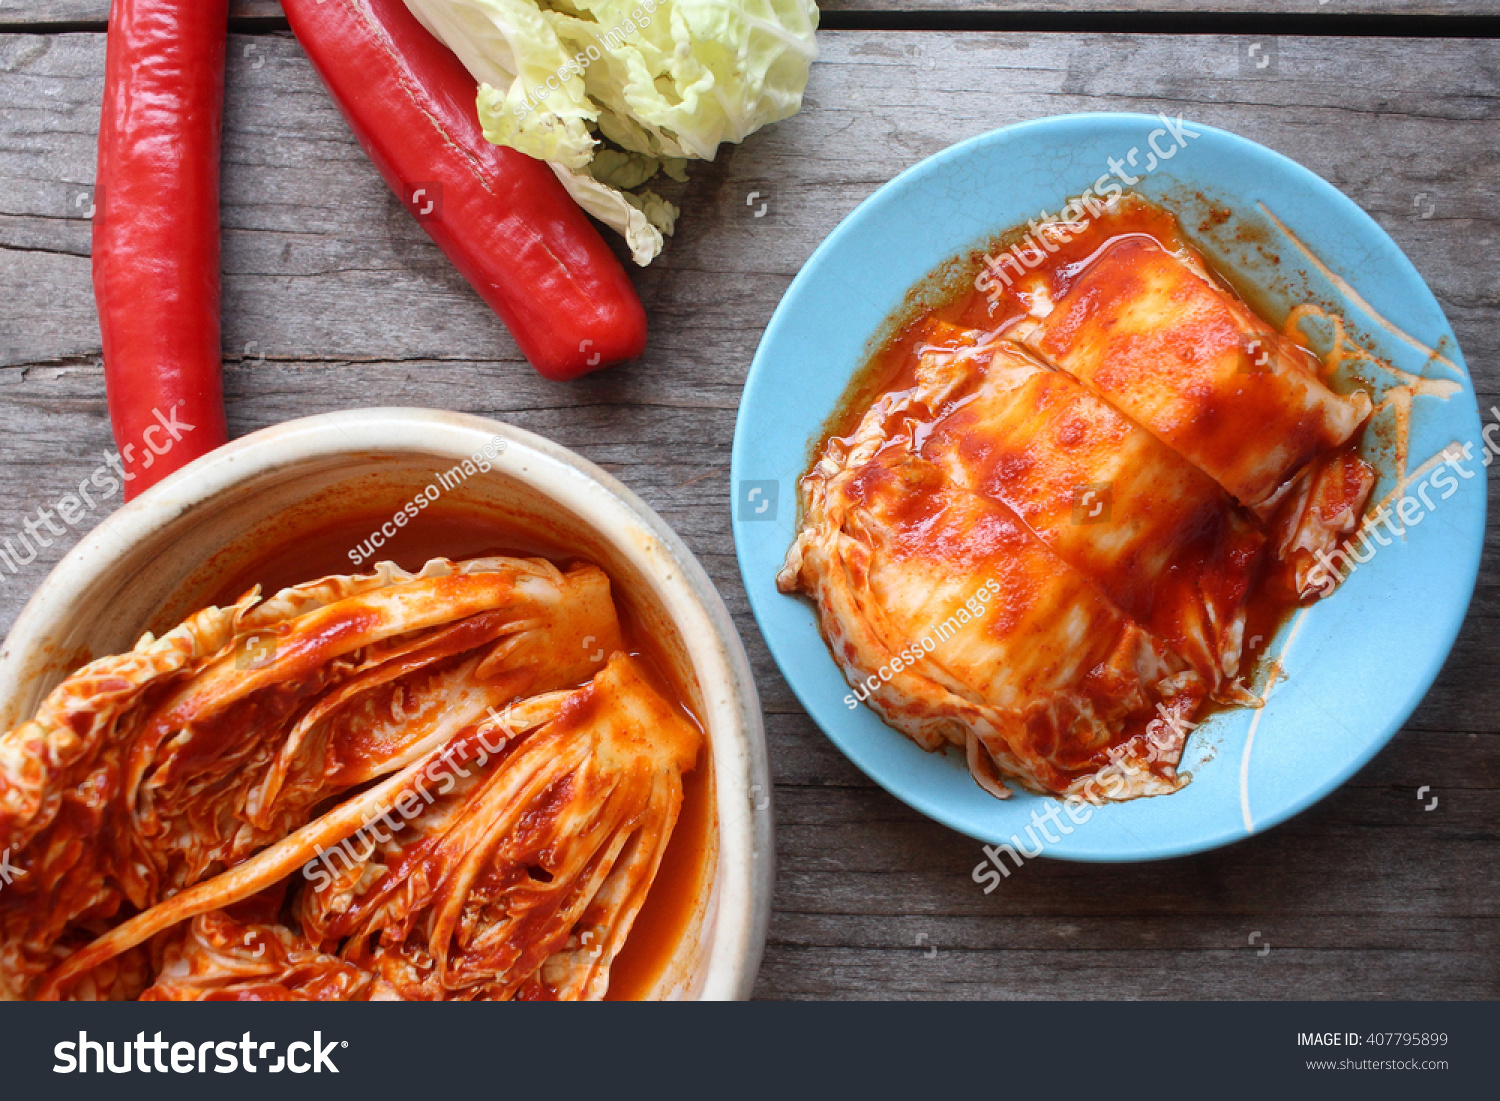 Kimchi Korean Food Stock Photo 407795899 : Shutterstock